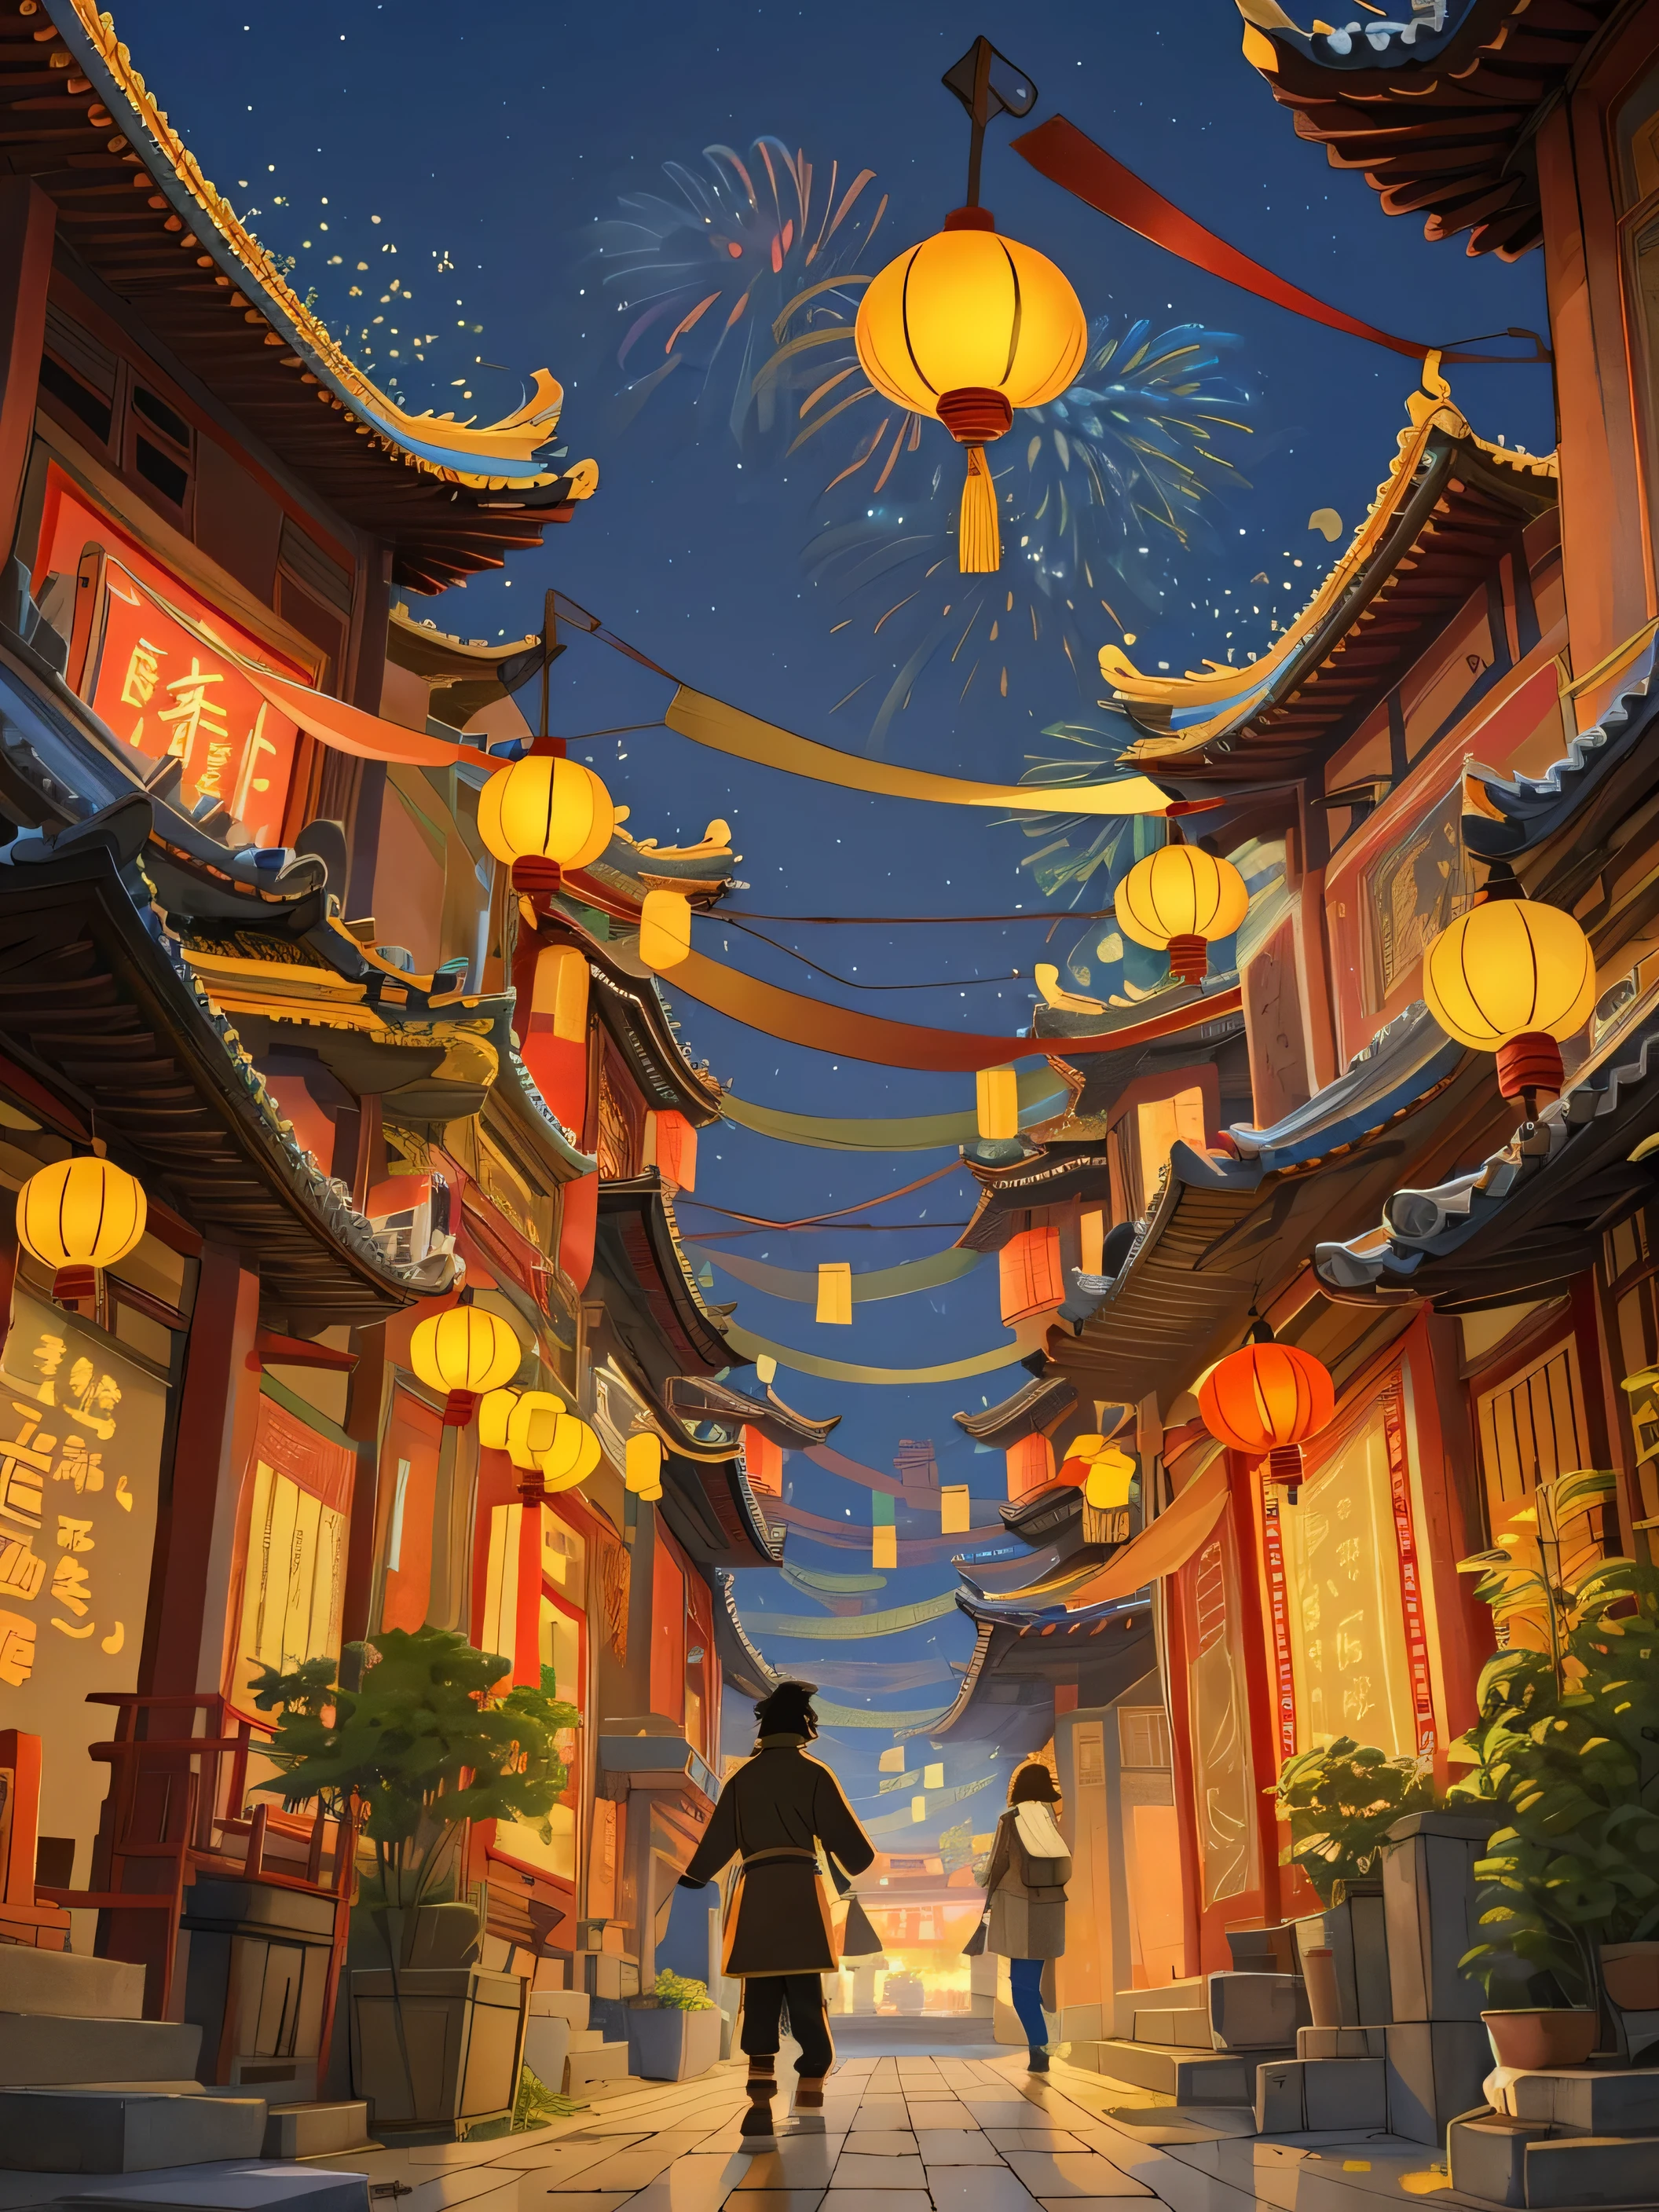 봄 축제，노란색-빨간색 톤，케인에게서，빨간 건물，Painting of woman walking down the 거리 holding lantern, 노랗고 붉은 하늘，불꽃，드림 차이나타운, 작가：양 지에, 작성자: Zou Zhe, 밤에는 등불, 작가：리 송, inspired 작가：미란다, 쿠 레이레이(Qu Leilei), 작가：미란다, 펑화 종(Fenghua Zhong)에게서 영감을 받은 작품, 량카이 기자, 중국의 새해 건축, 중앙 대칭, 보다, 일러스트레이션 스타일, 고대 건물, 거리, 축제 분위기, 불꽃, 따뜻한 색, 걸작